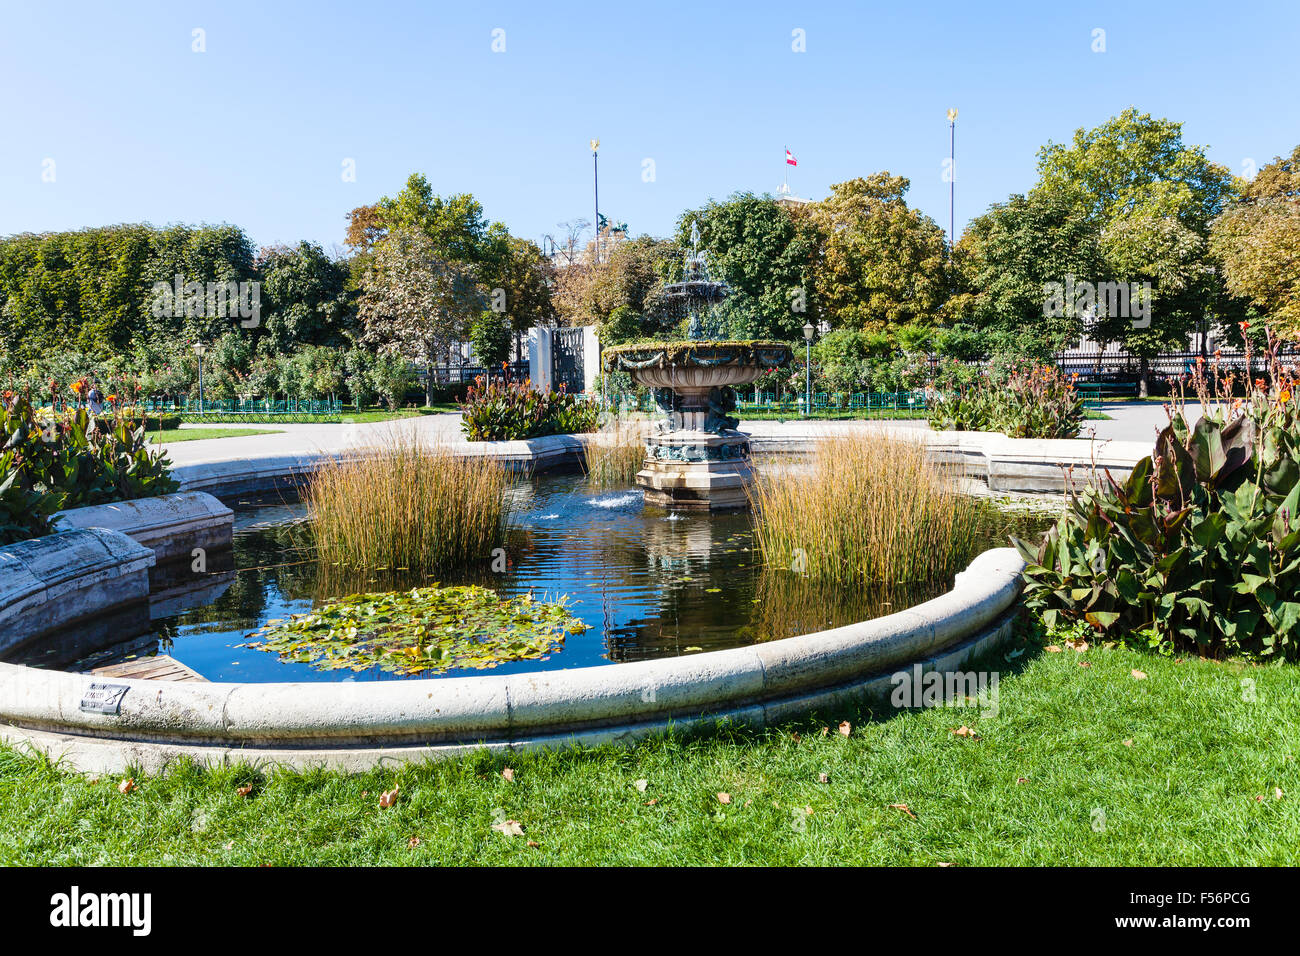 Viaggiare per la città di Vienna - Fontana in Volksgarten (Persone giardino) parco pubblico di Hofburg di Vienna, Austria. Foto Stock